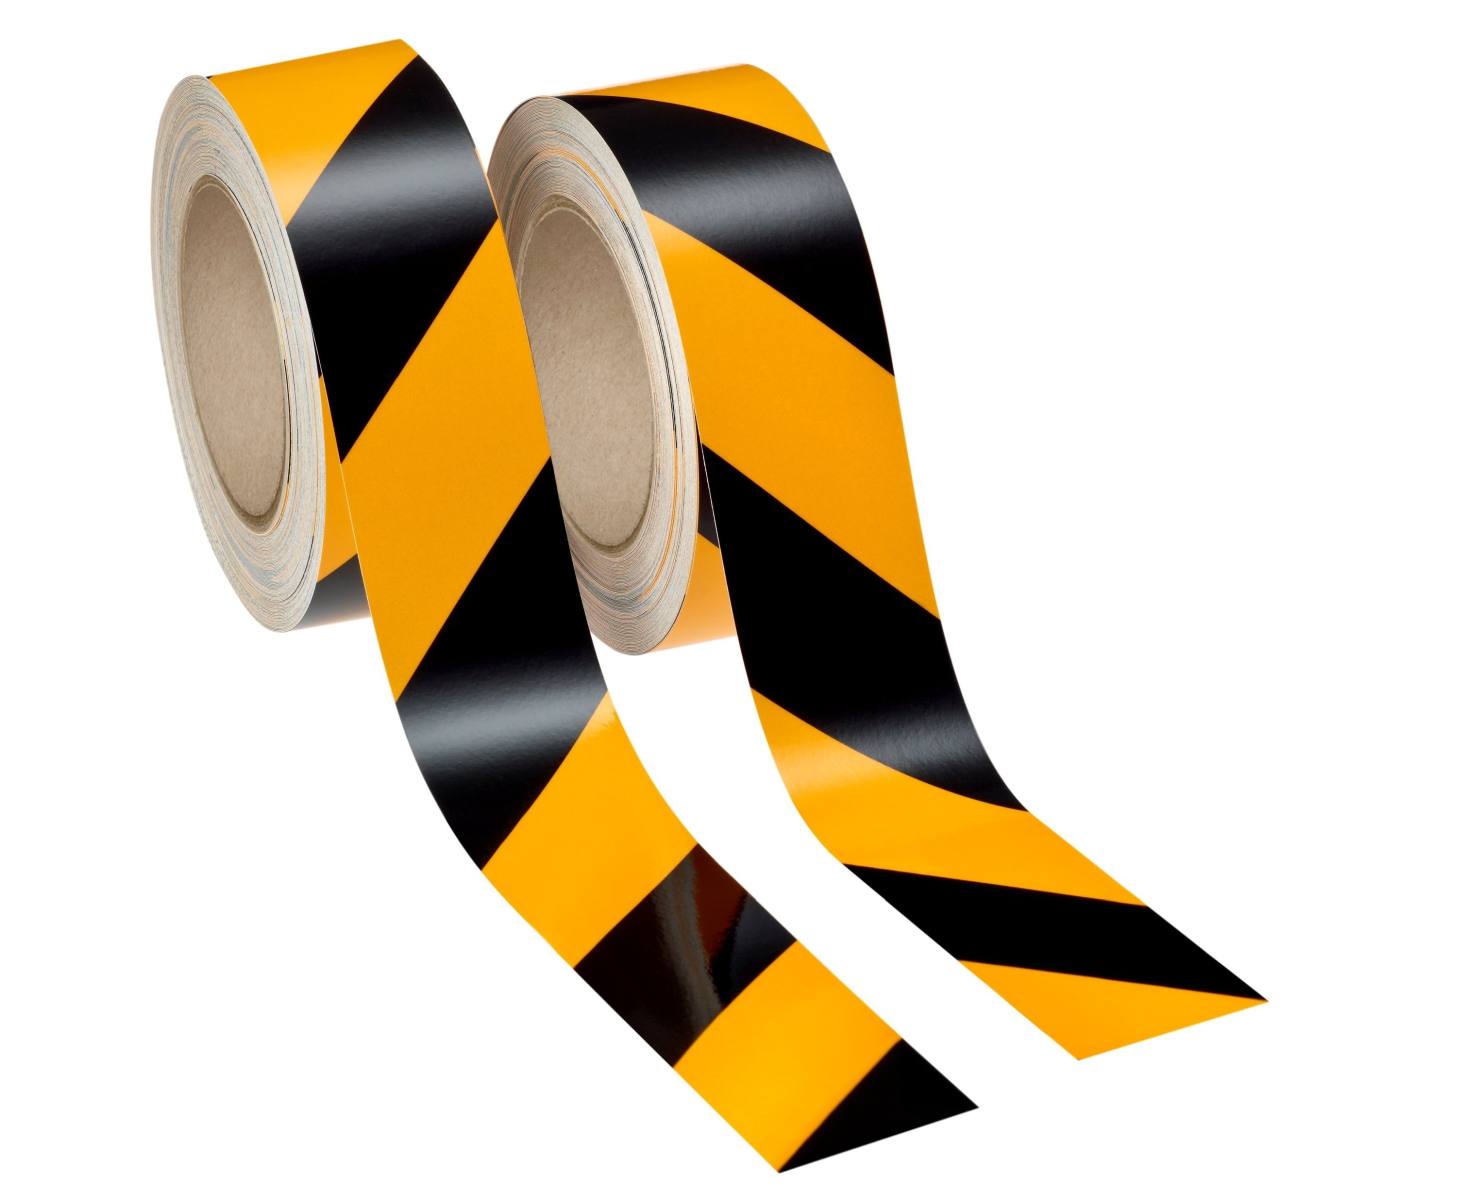 3M industriële waarschuwingsmarkeringen 13058A50 zwart/geel, reflecterend, zelfklevend, 1 rol rechts, 1 rol links, 50 mm x 25 m incl. trekker